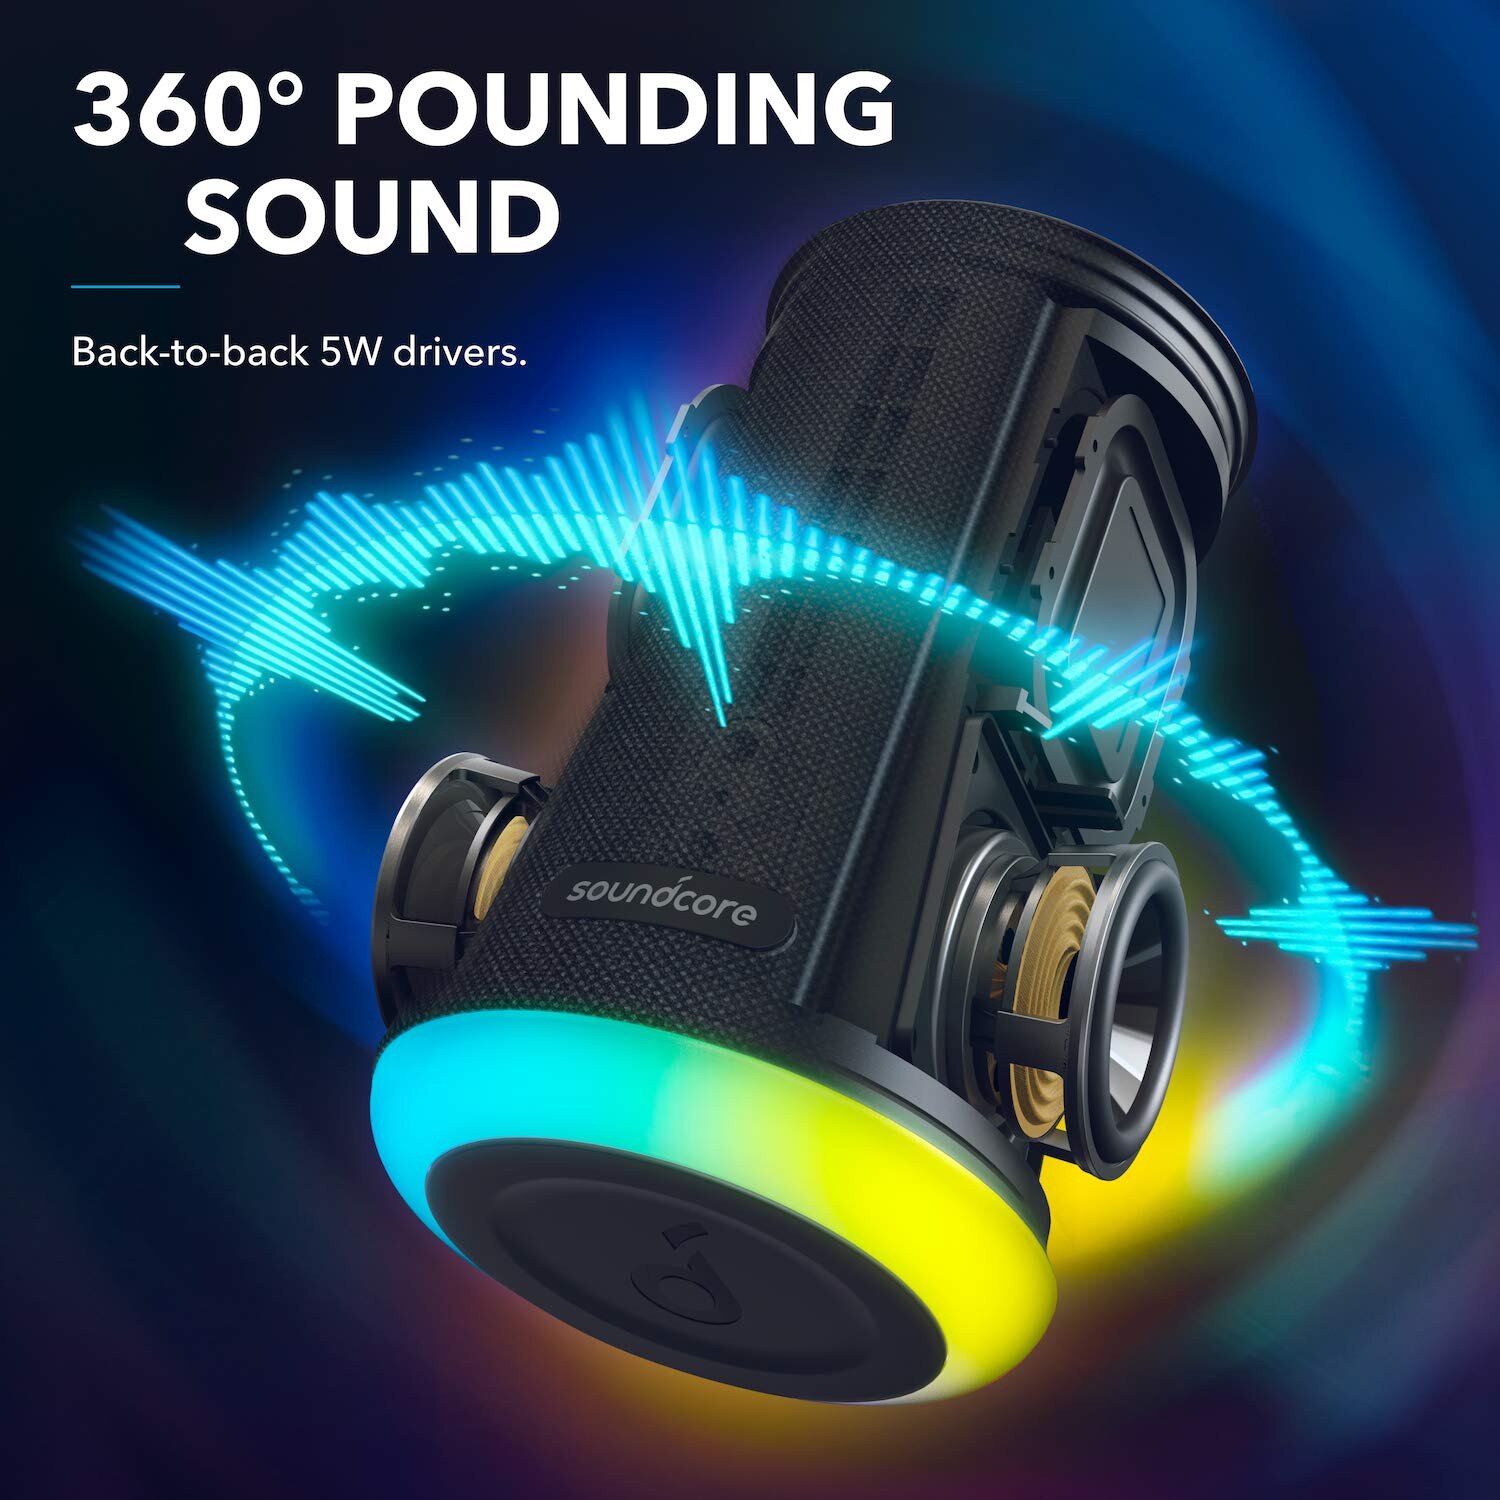 soundcore speaker flare 2